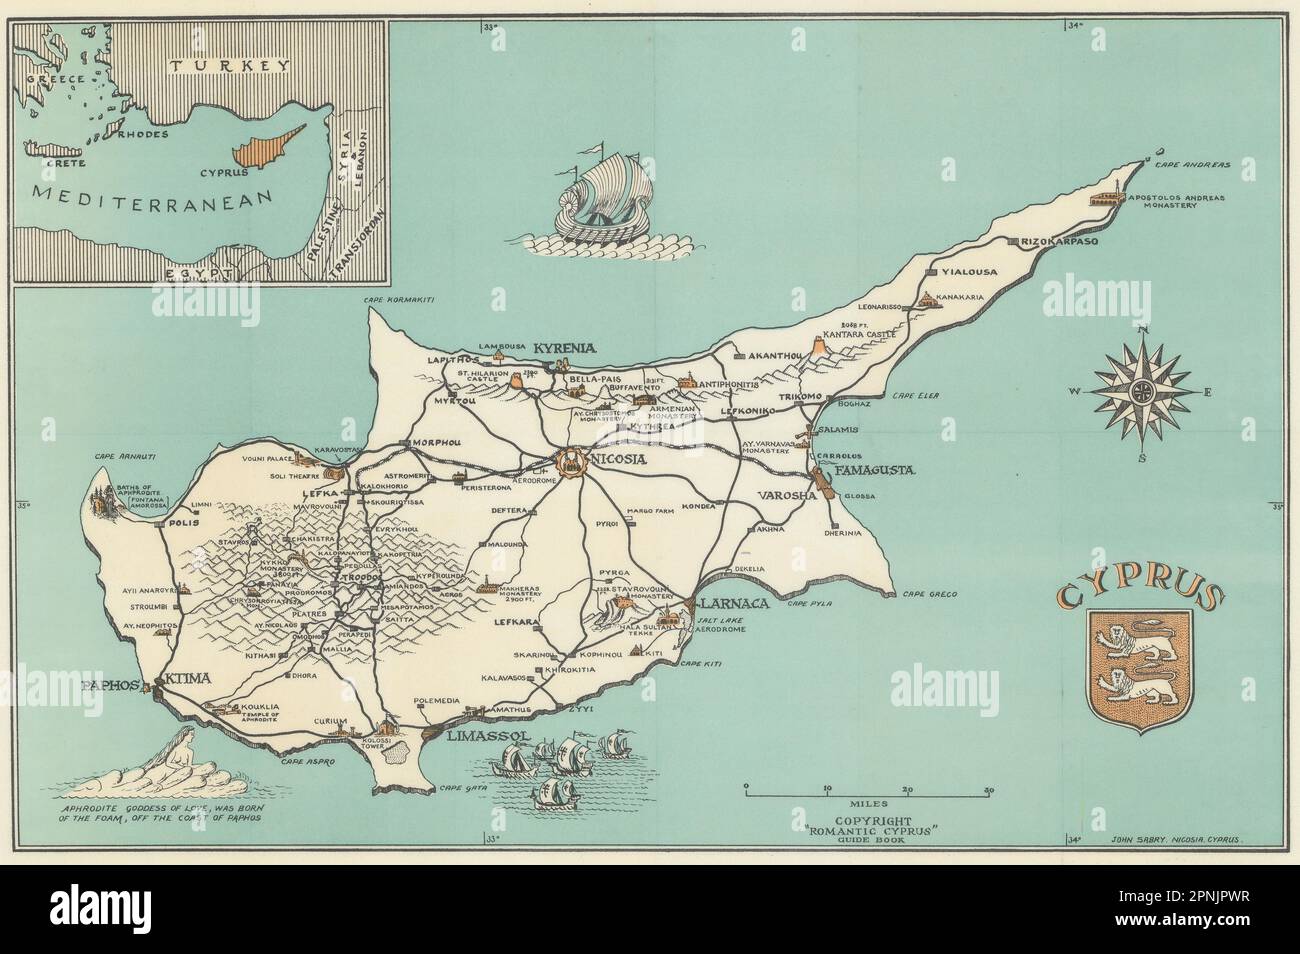 Mappa pittorica di Cipro di John Sabry 1951 vecchio piano grafico vintage Foto Stock